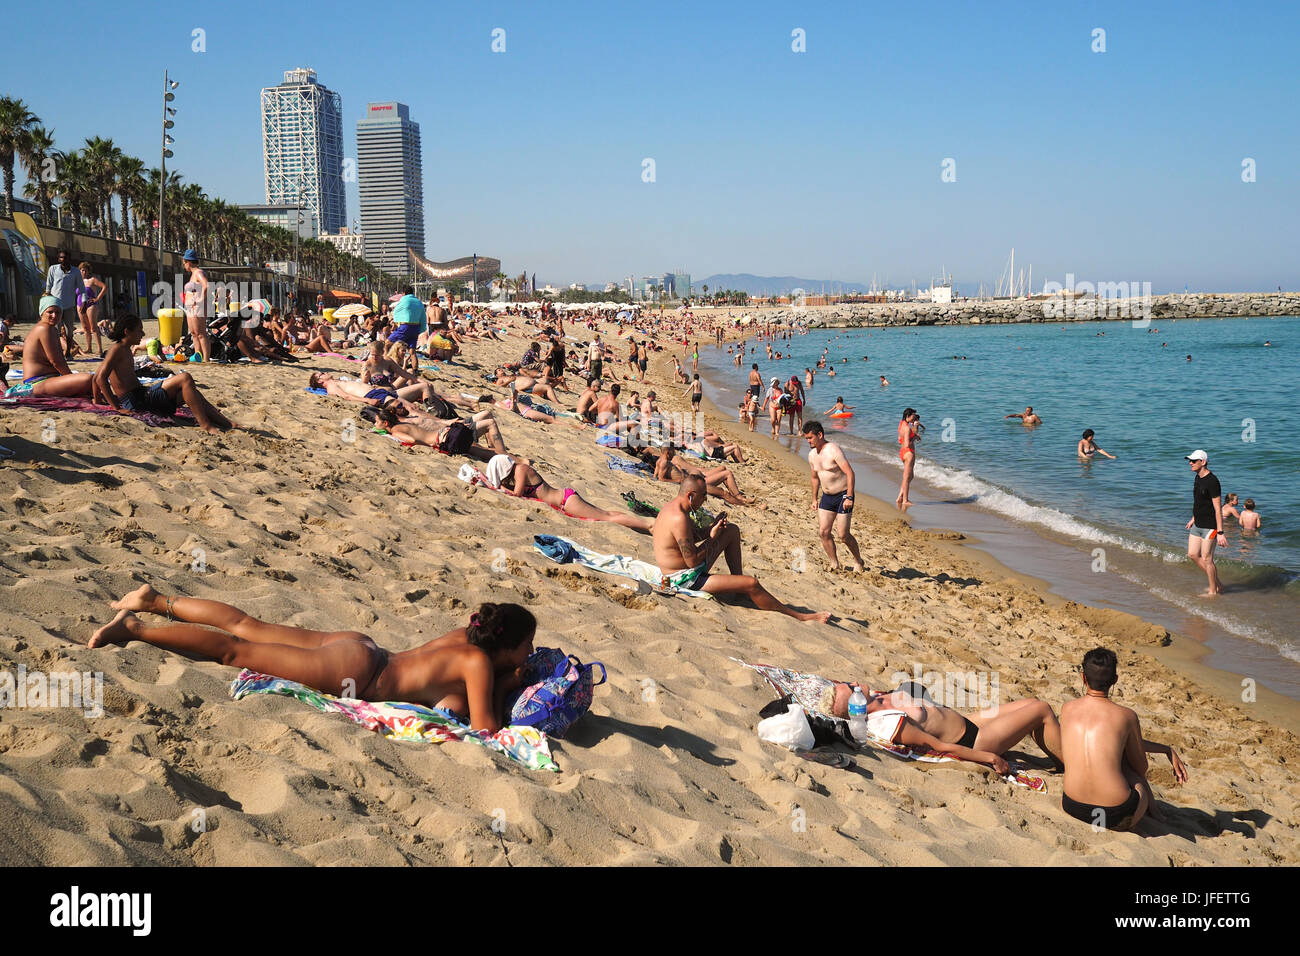 Una folla di persone a prendere il sole sulla spiaggia di Barceloneta; sullo sfondo i grattacieli Hotel Arts e Torre Mapfre, Vila Olimpica e Port Olimpic Foto Stock